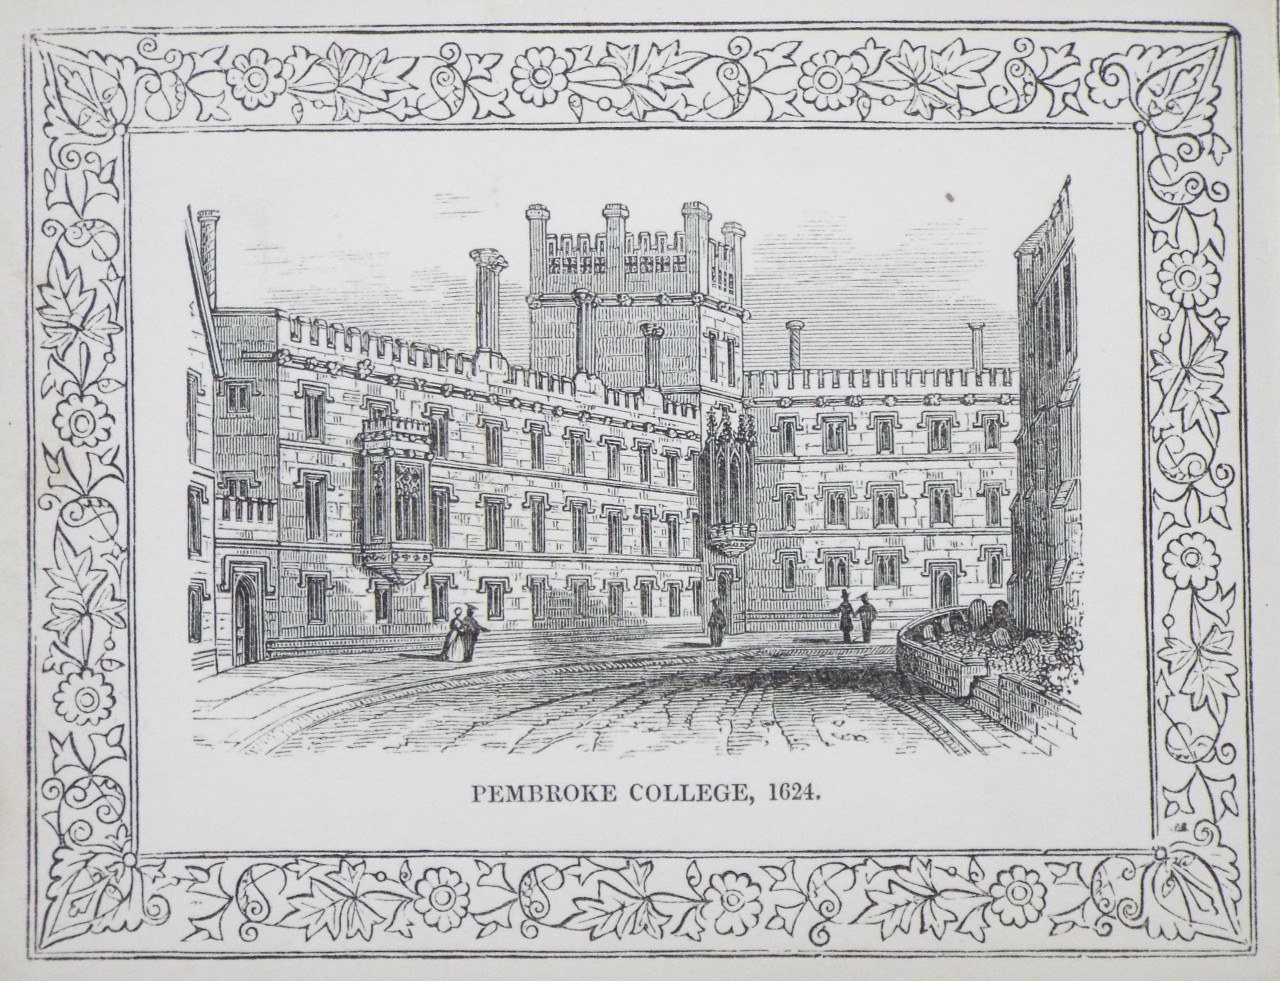 Wood - Pembroke College, 1624. - Whittock